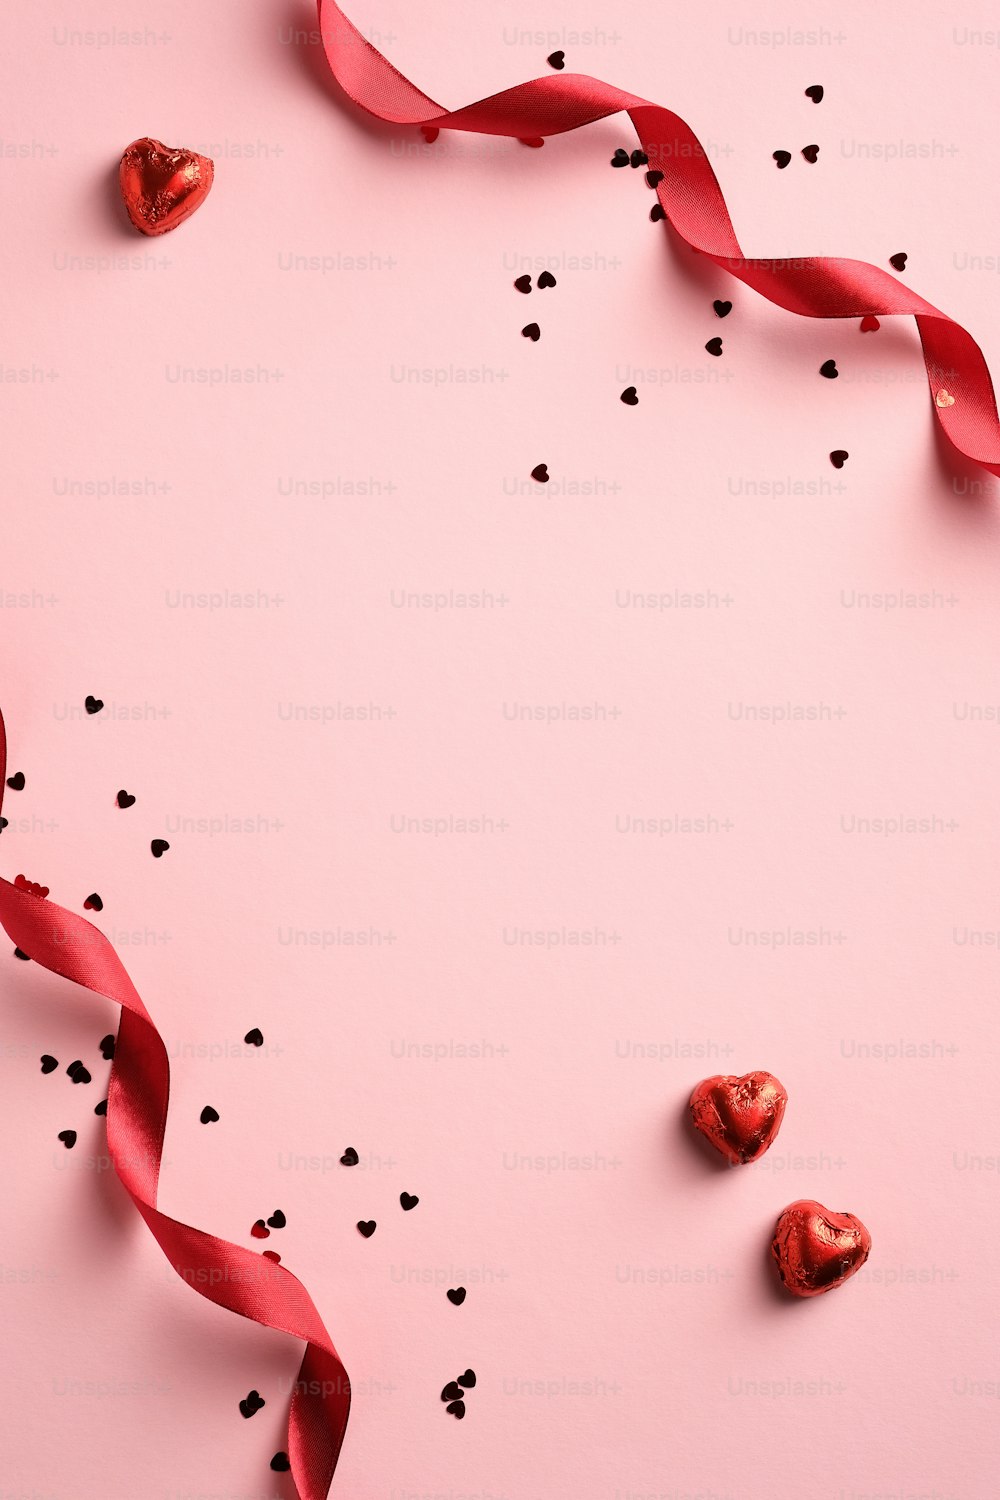 赤いリボン、紙吹雪、ピンクの背景にハート型のお菓子とエレガントなバレンタインデーの背景。ミニマルなスタイル。フラットレイ。